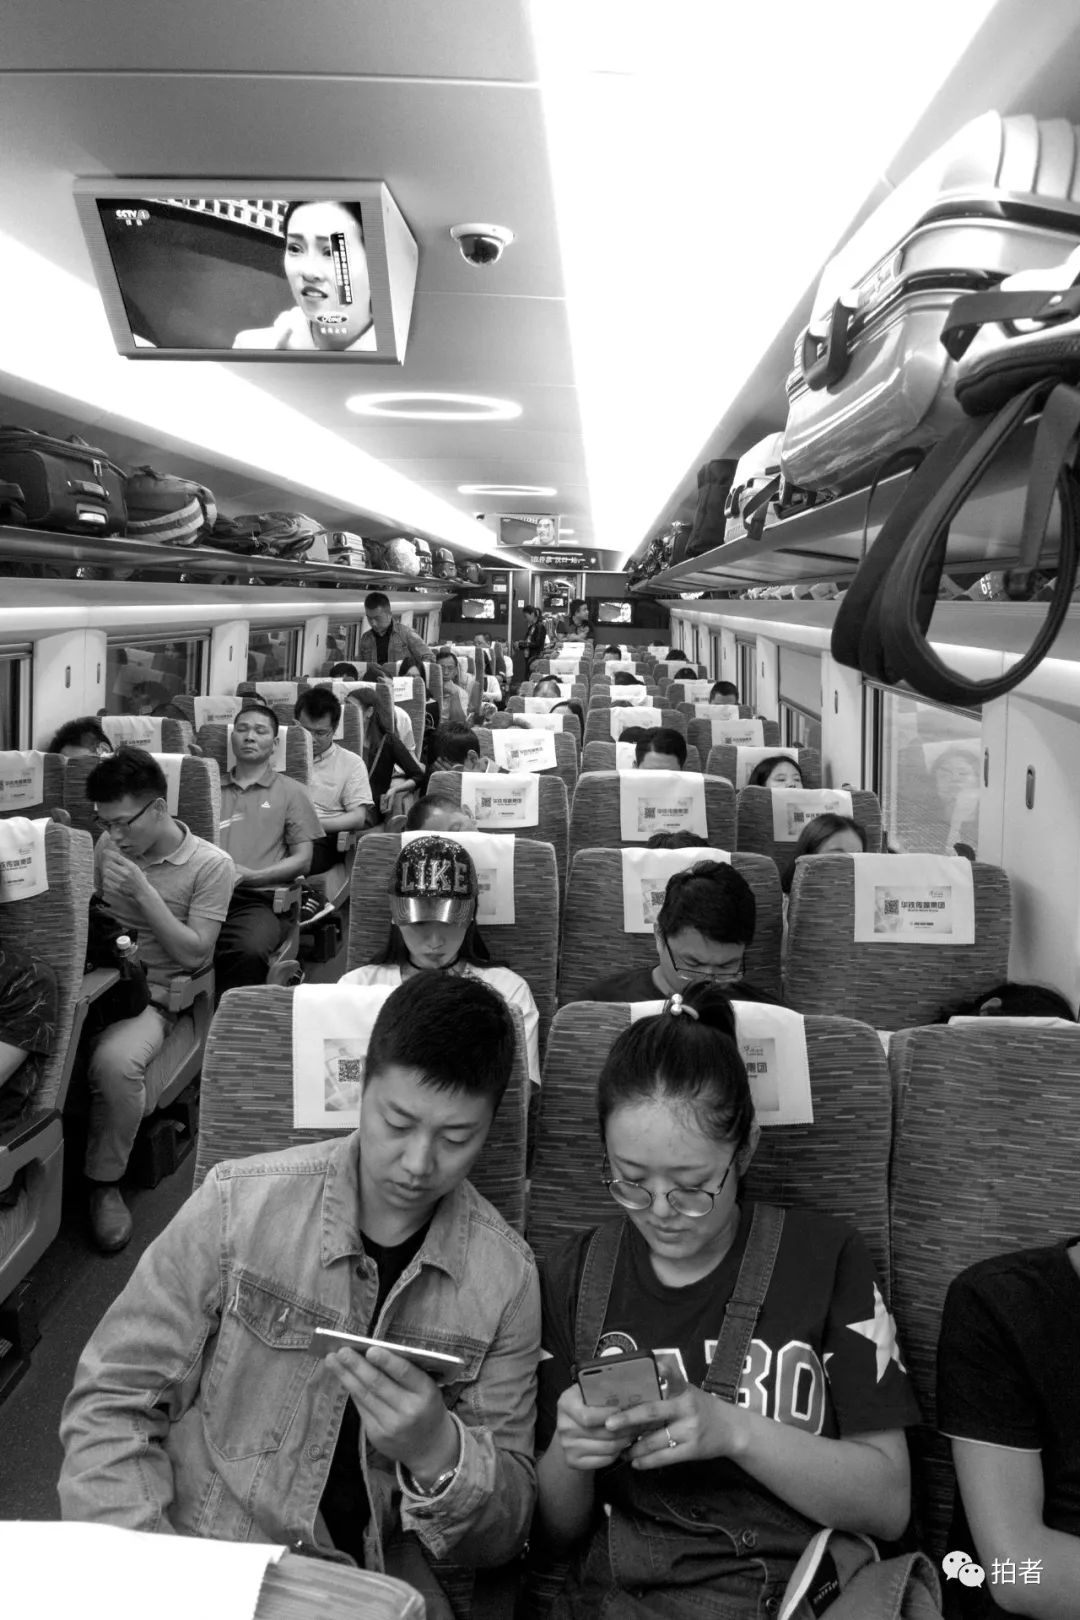 印度火车上的奇葩事：行李架上睡人、两个人买了同一个座位